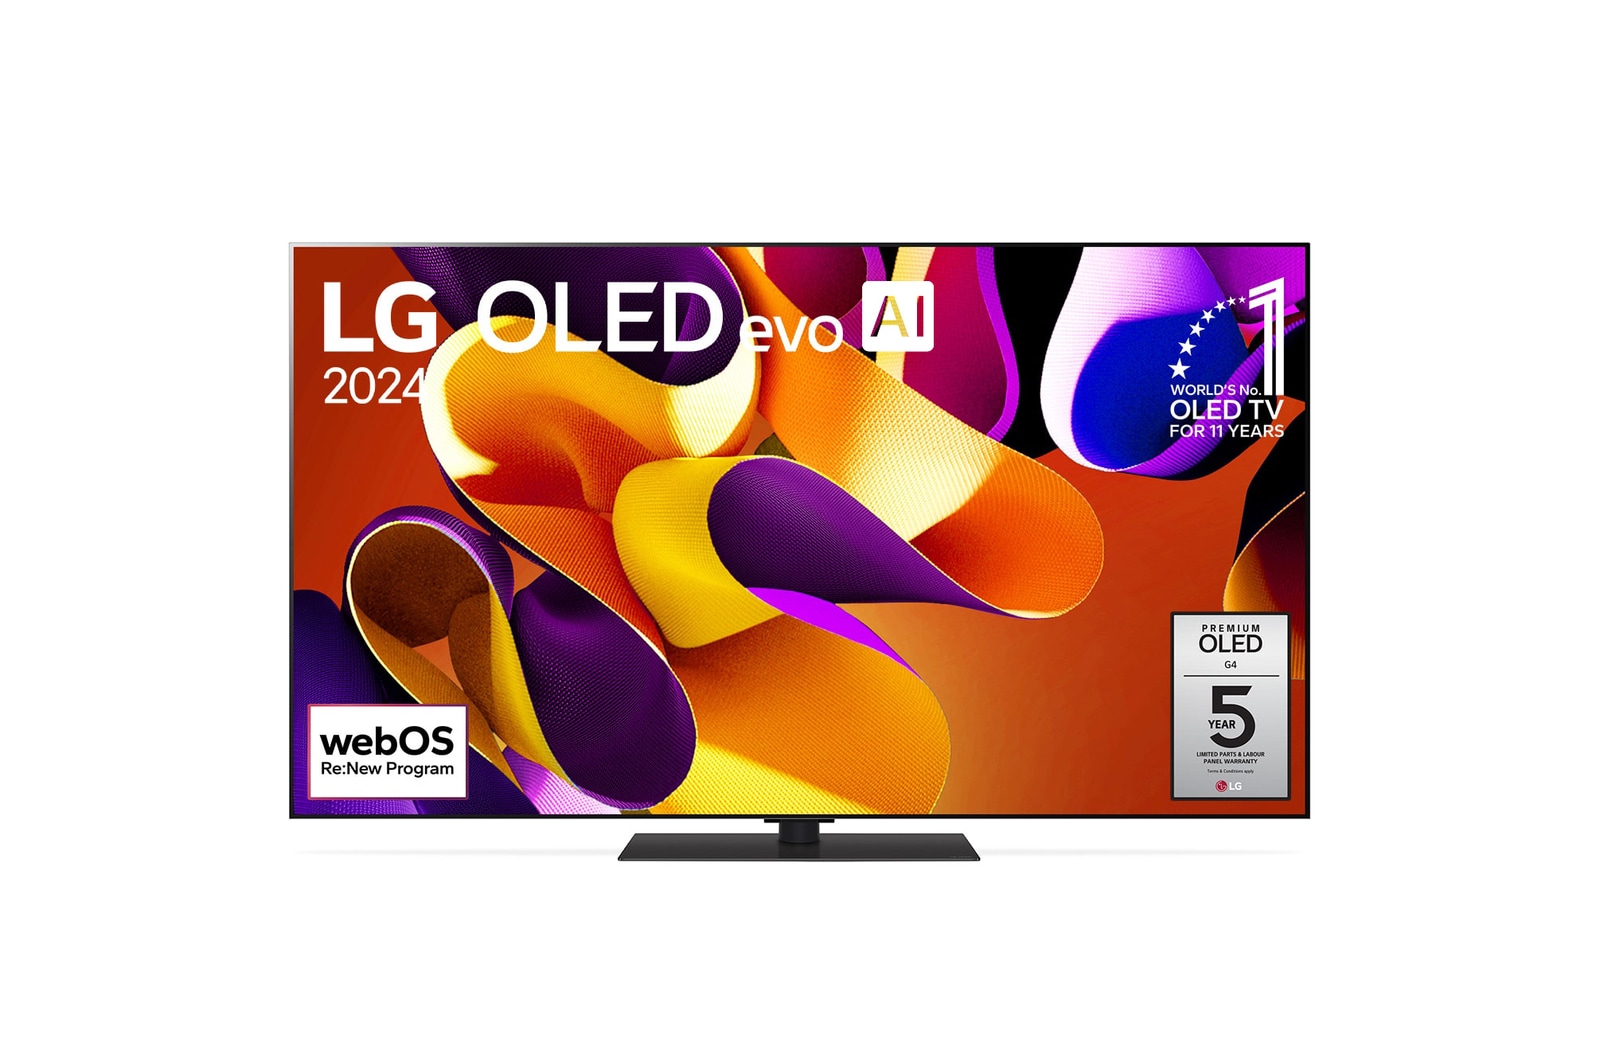 Vue de face du téléviseur LG OLED evo AI G4 avec l’emblème OLED numéro 1 mondial depuis 11 ans, le logo du programme webOS Re:New sur l’écran ainsi que la barre de son au bas de l’écran